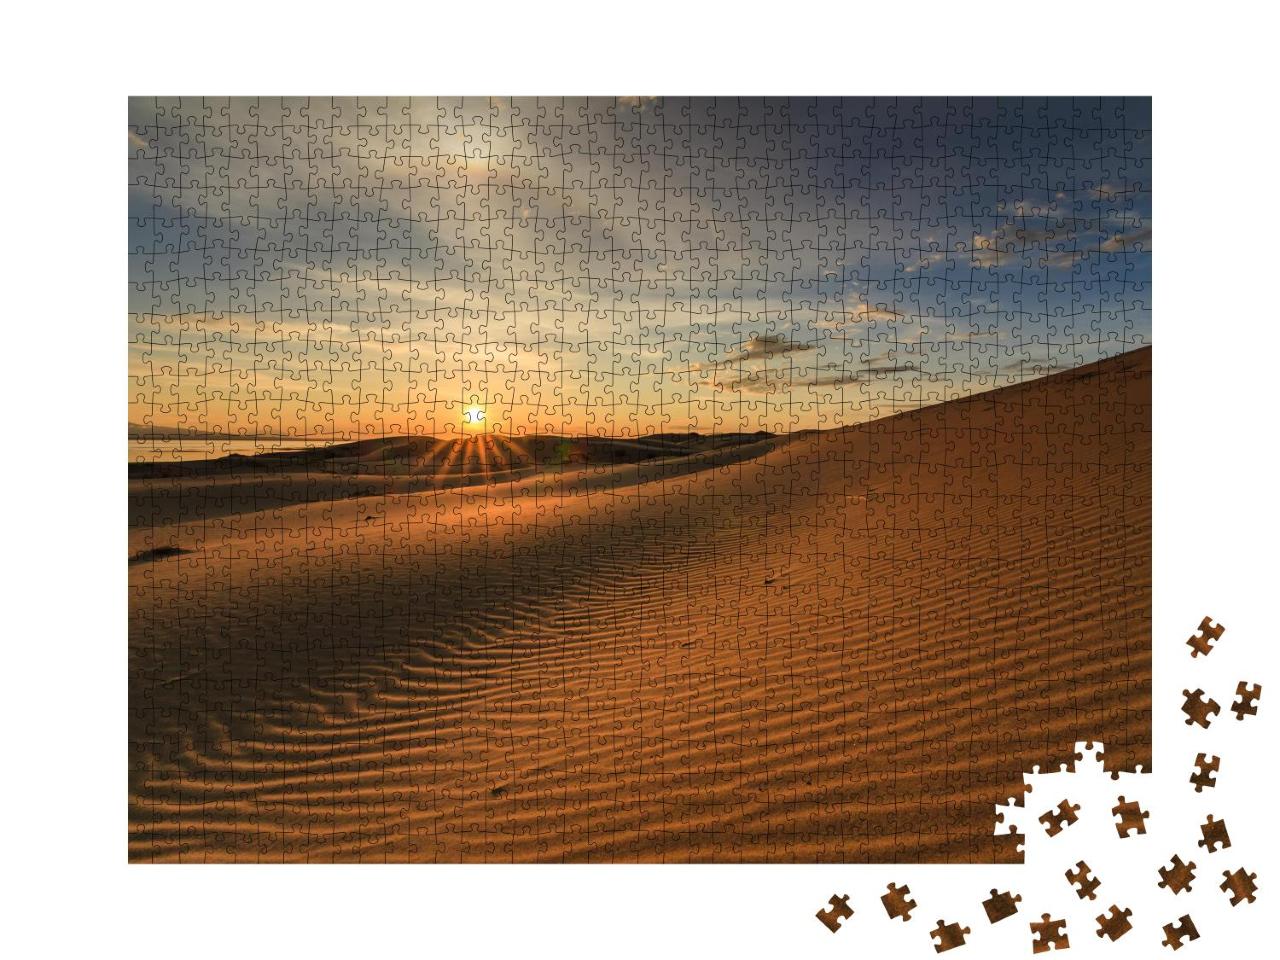 Puzzle 1000 Teile „Schöne Aussicht auf die Wüste Gobi in der Mongolei“